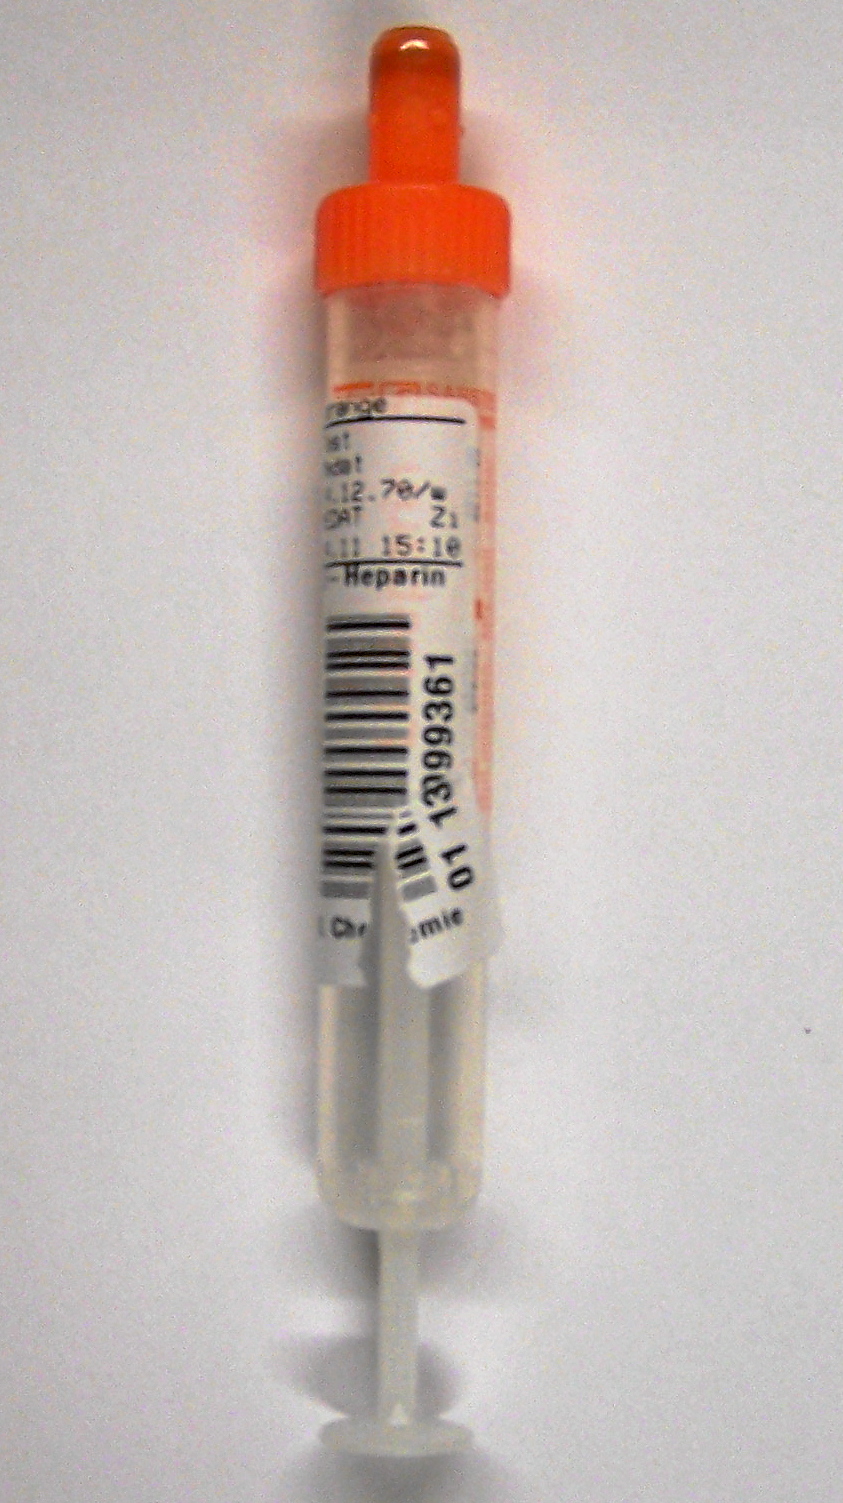 Bild einer Lithium-Heparin-Monovette mit einem Patientenetikett dass in Längsrichtung eingerissen ist.